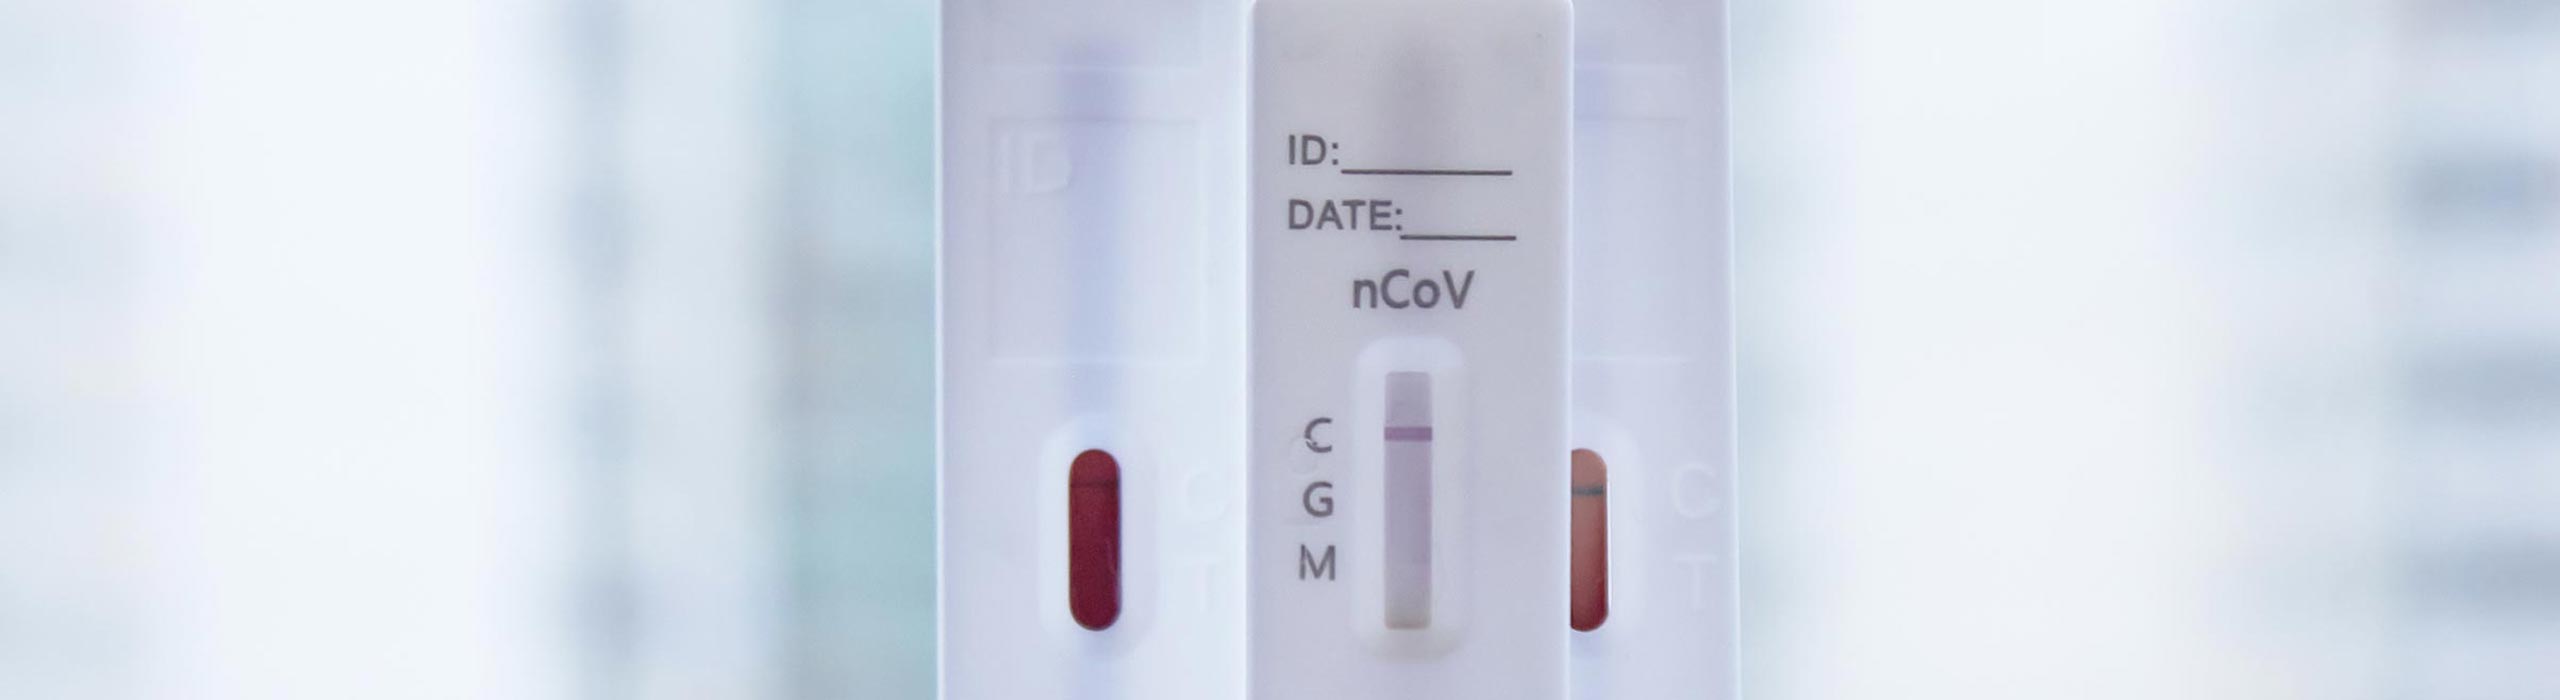 DRK KV Buchen e.V. - Schnelltest-Zentrum Buchen - PCR-Test online buchen